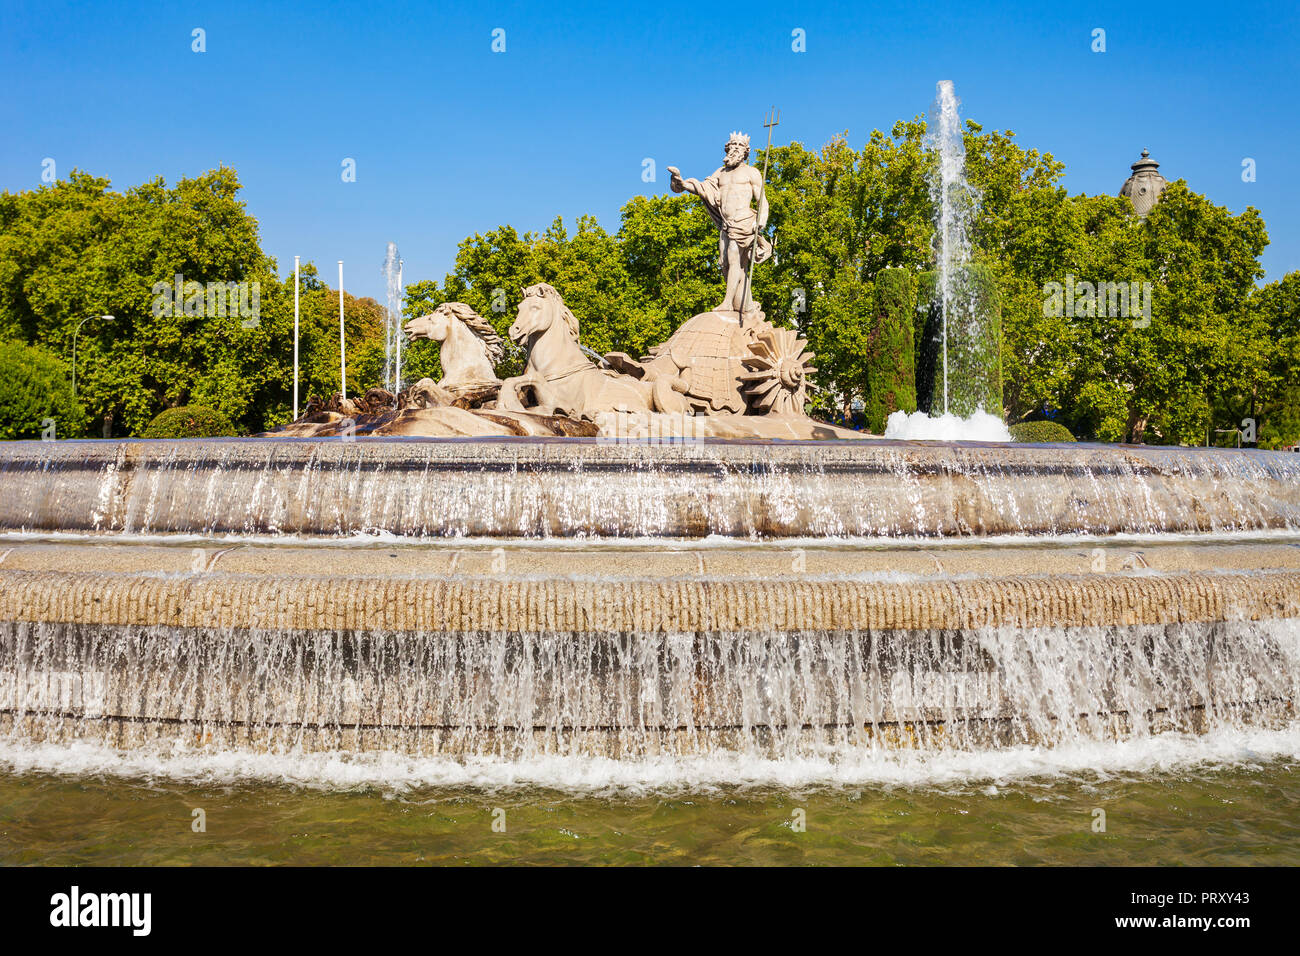 Neptunbrunnen oder Fuente de Neptuno im Zentrum von Madrid, Spanien. Madrid ist die Hauptstadt von Spanien. Stockfoto